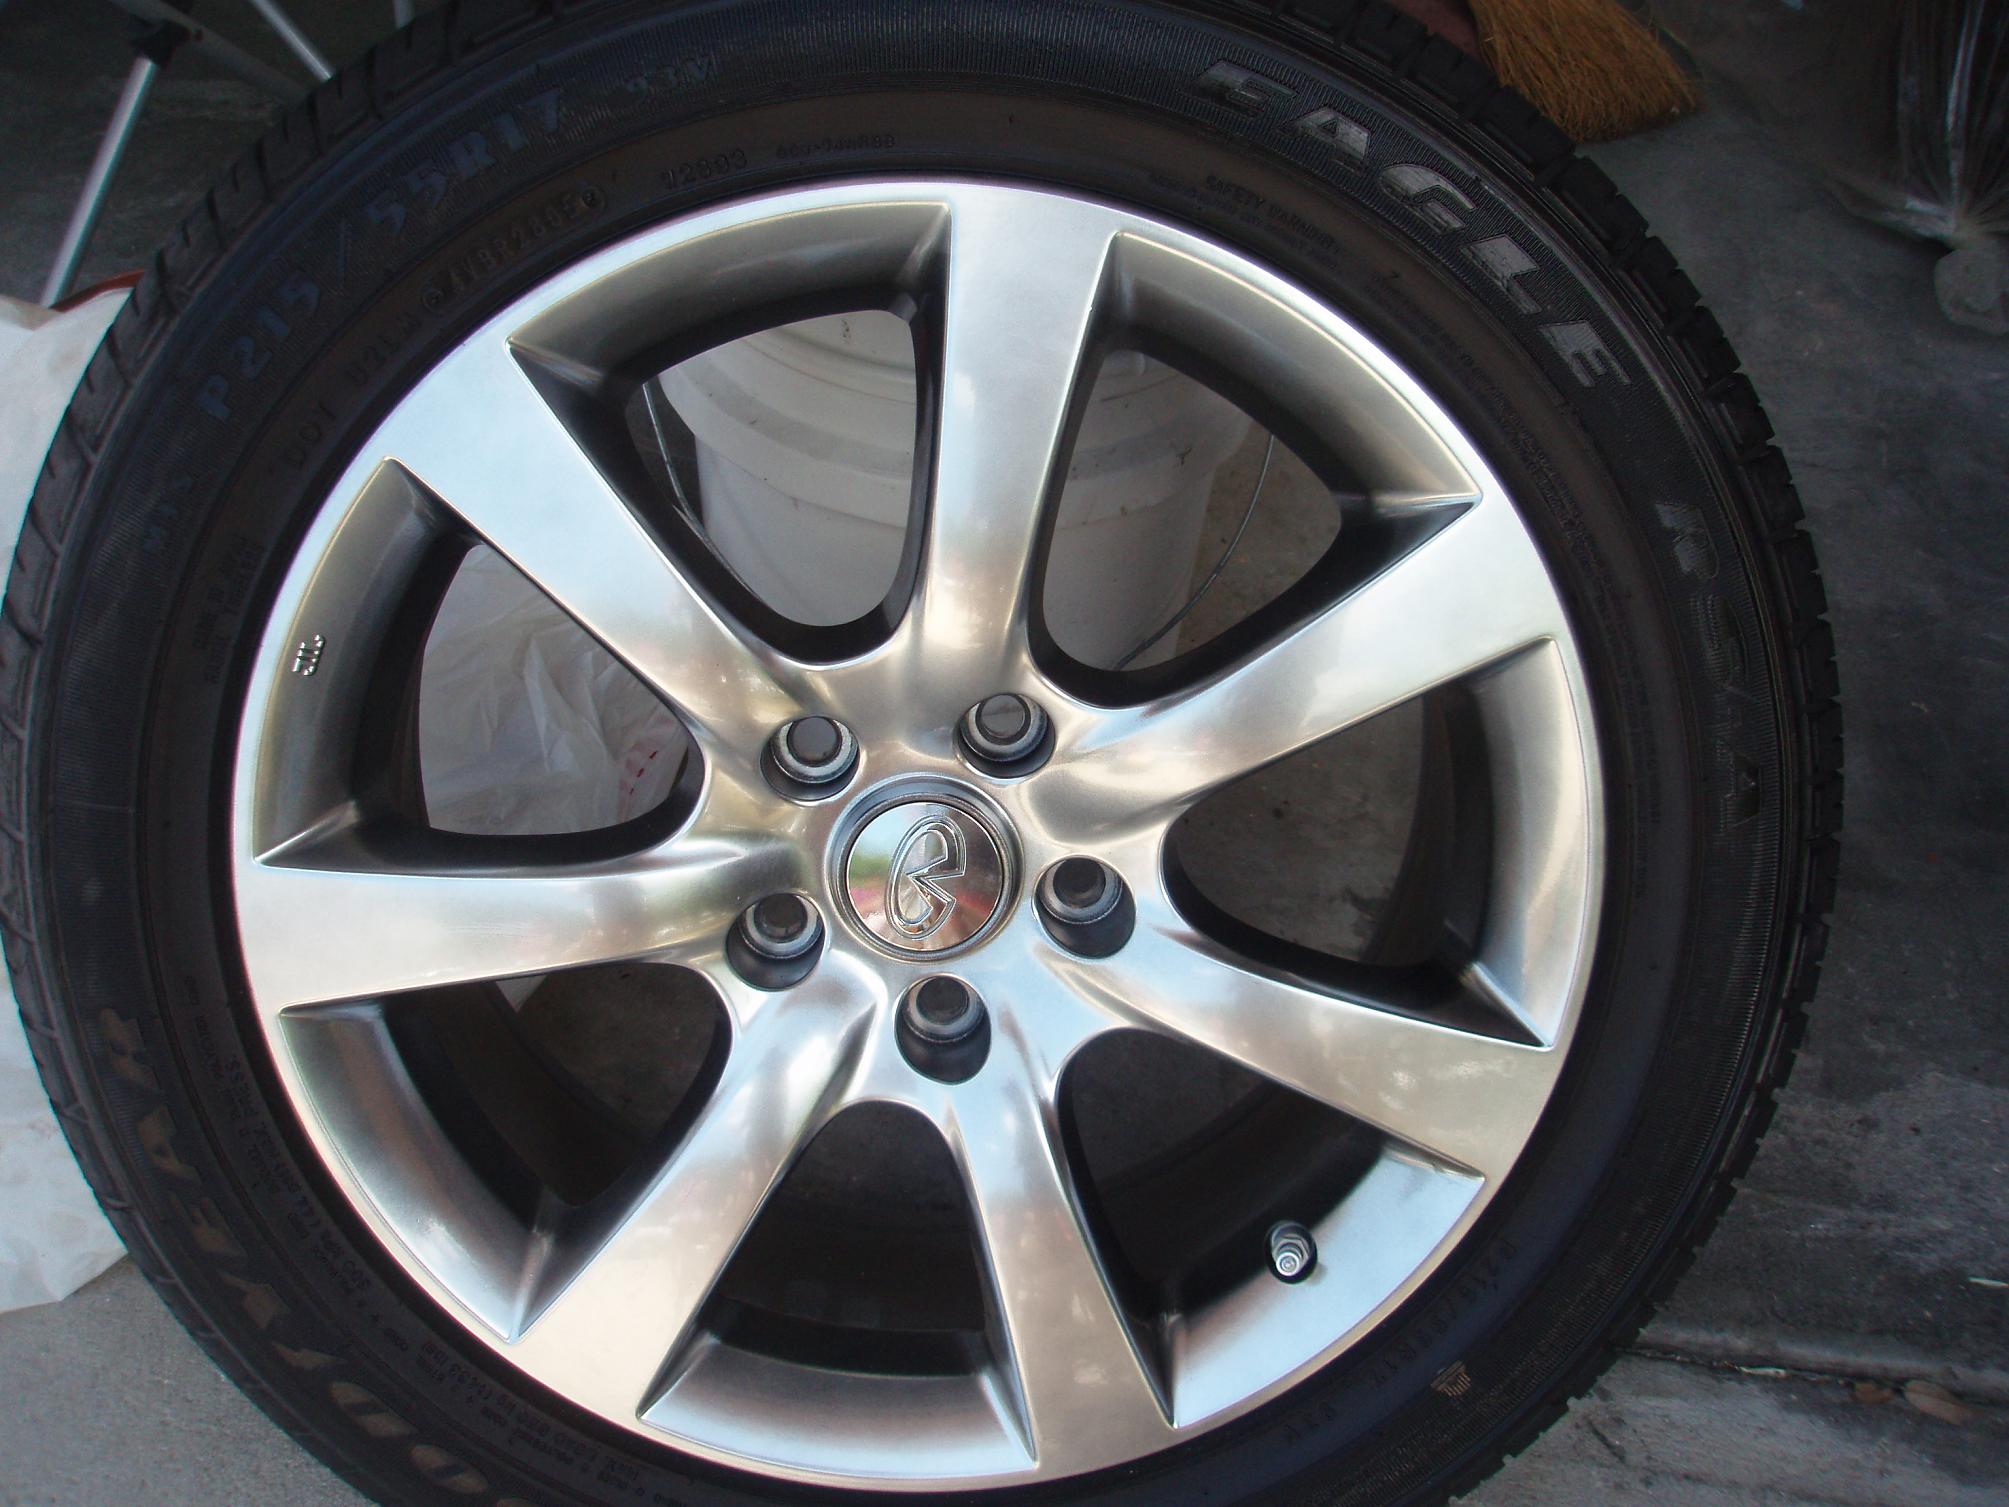 FS SoEast 17 inch like new sedan OEM 7 spoke wheels 